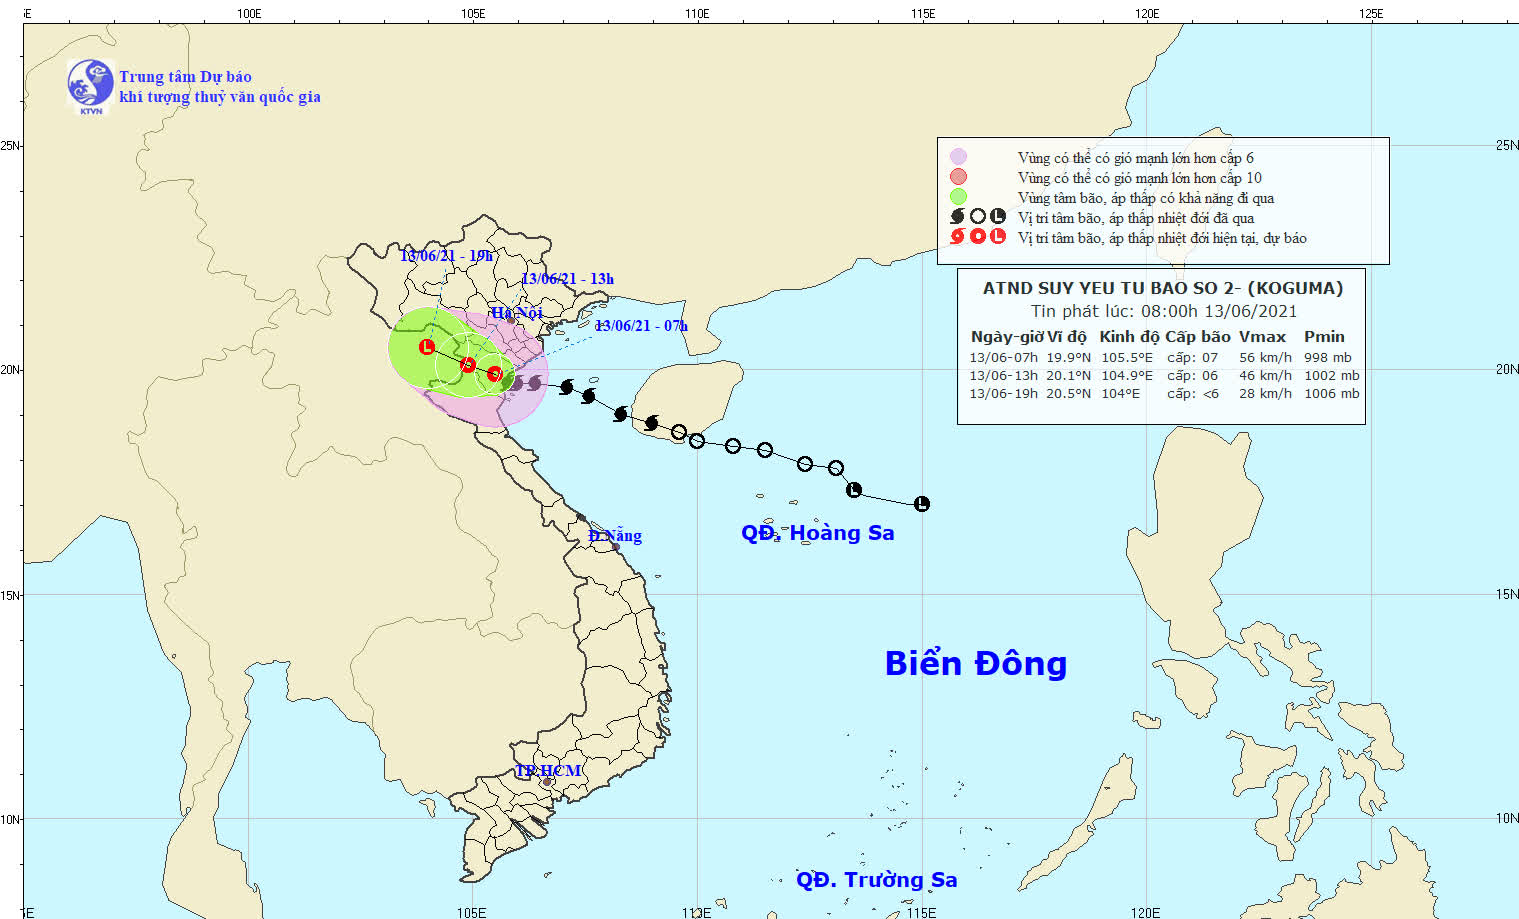 Bão số 2 suy yếu thành áp thấp nhiệt đới, Hà Nội mưa như trút - Ảnh 1.